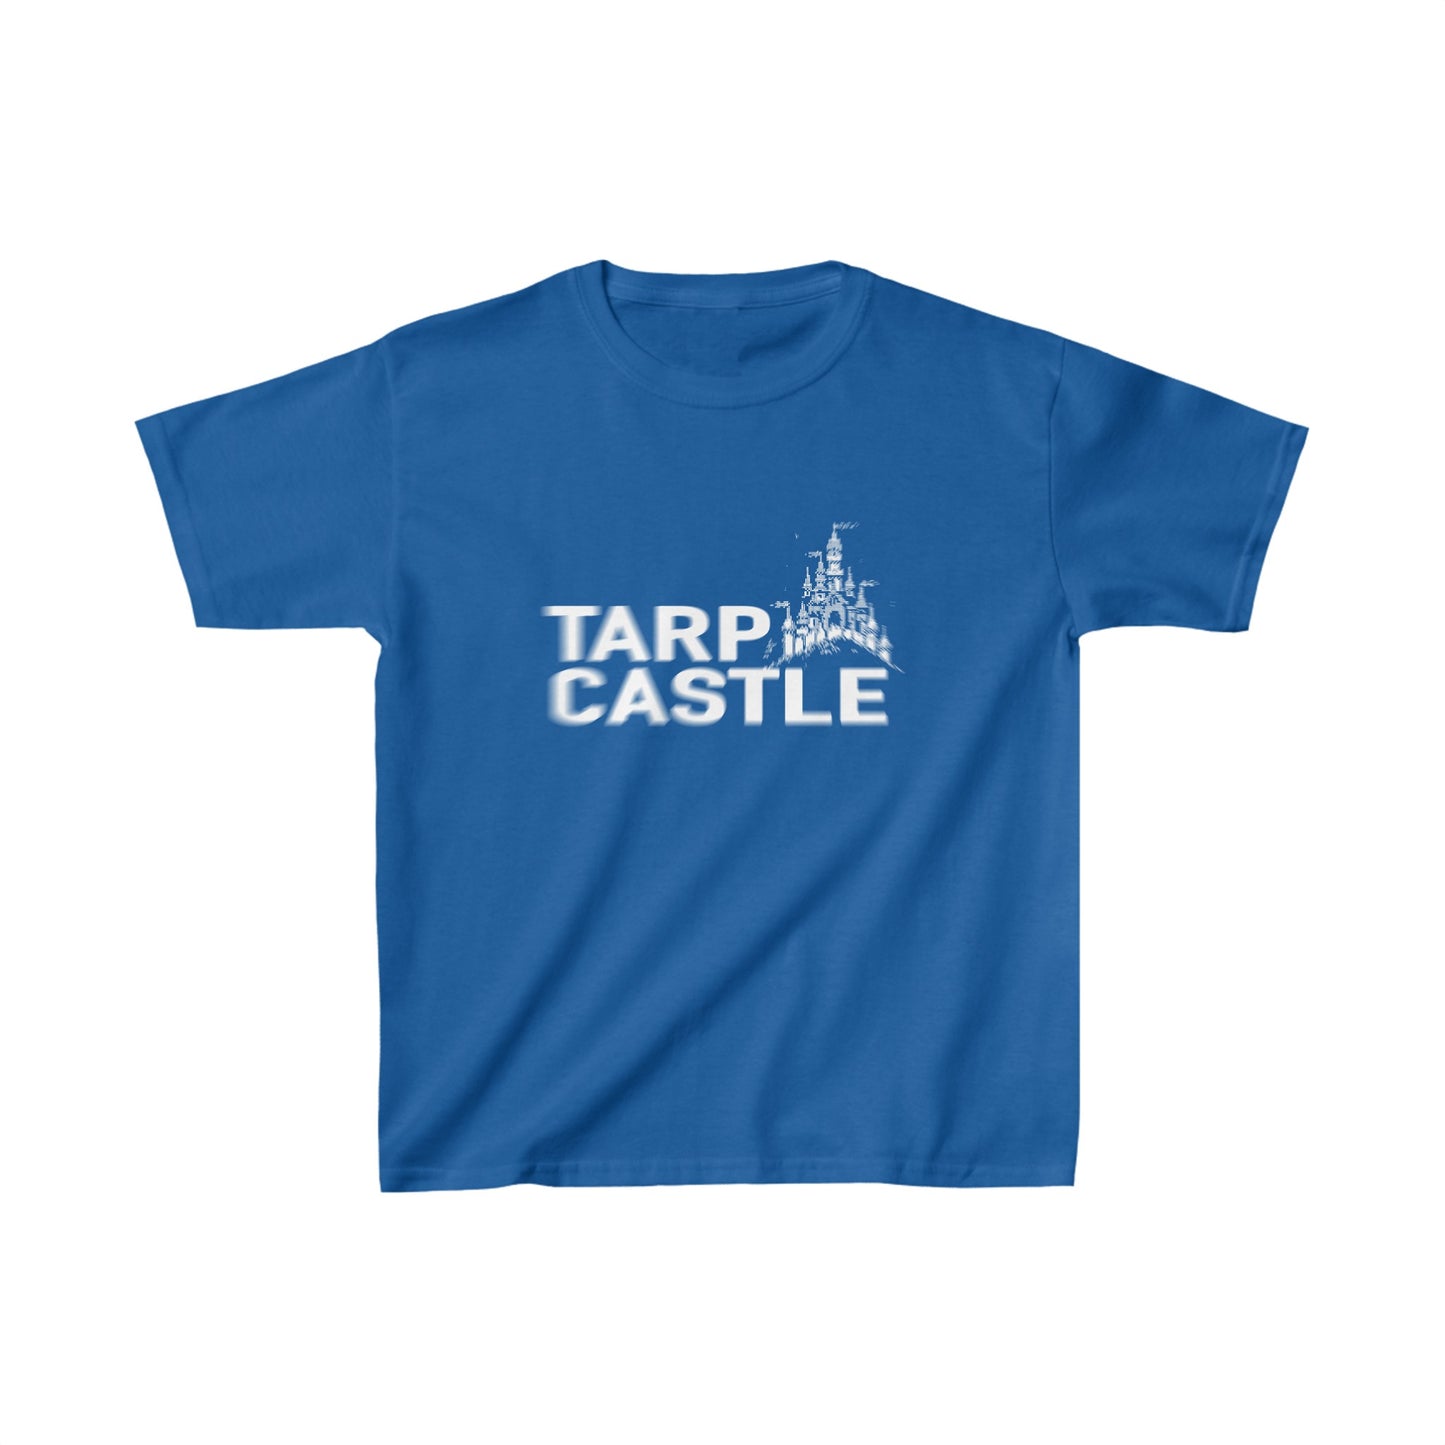 Tarp Castle kids tee